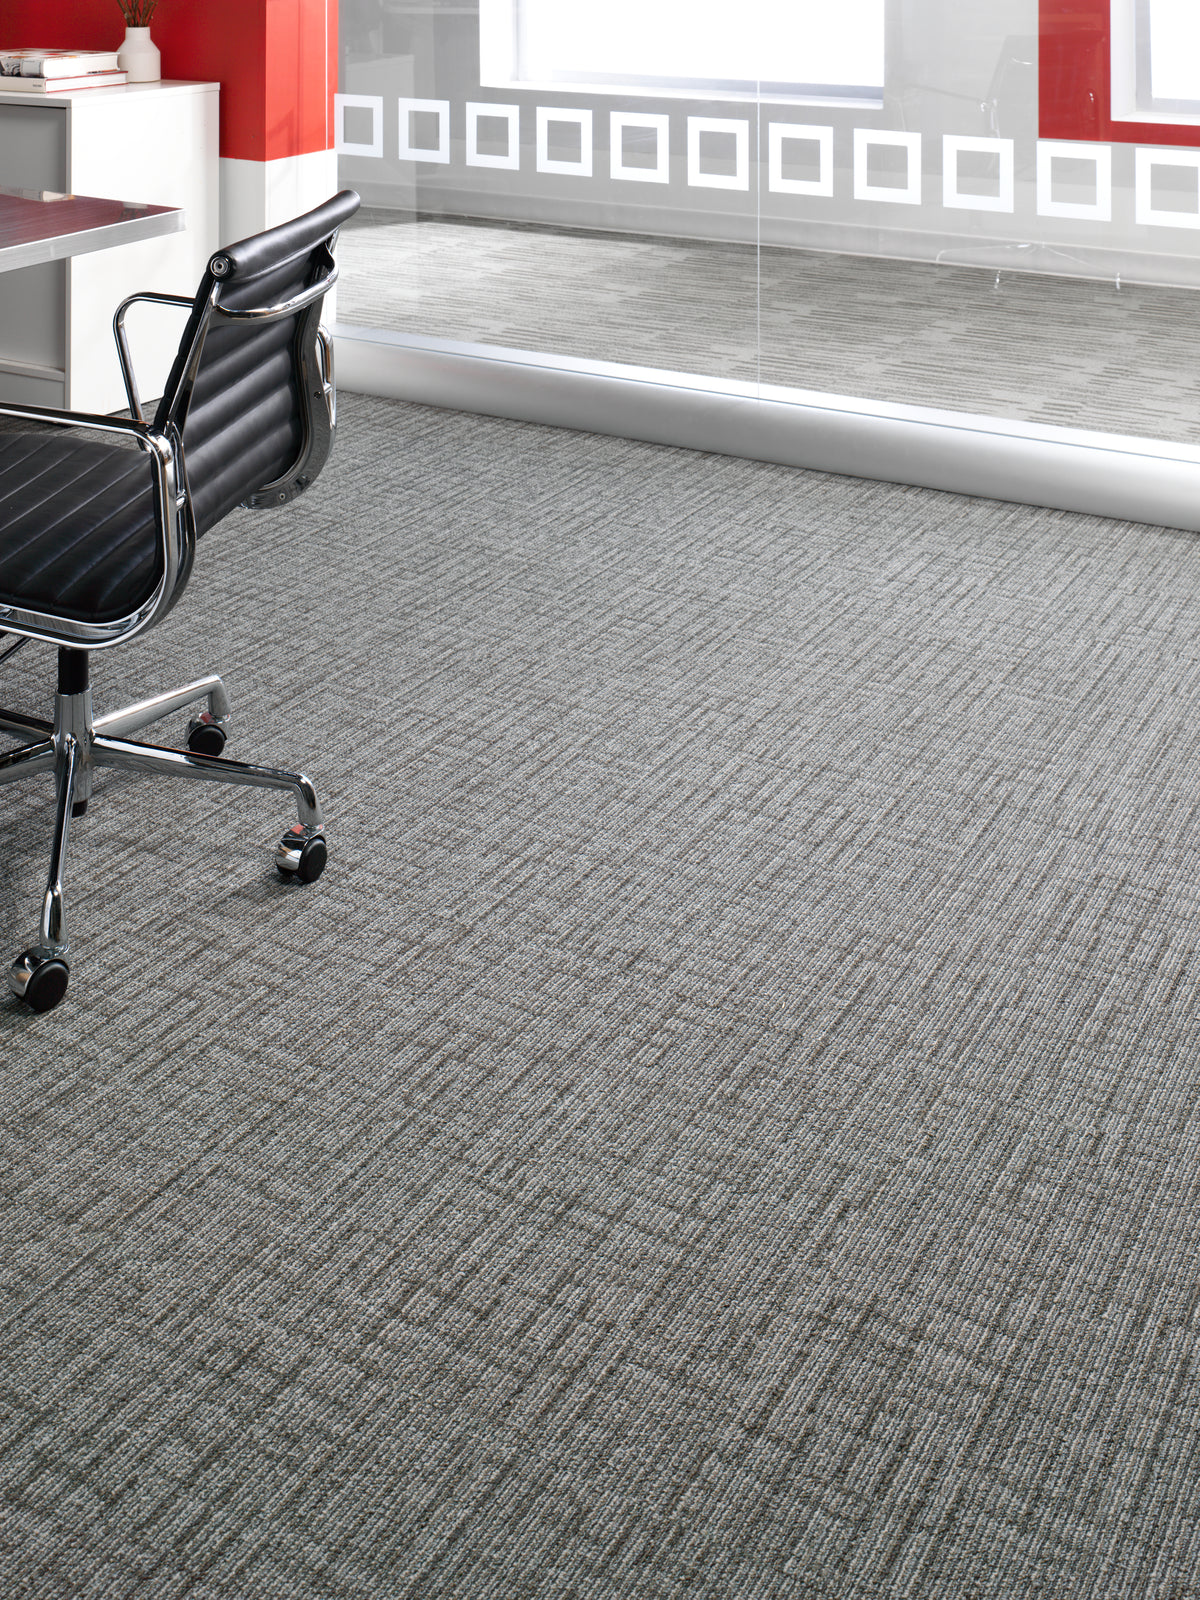 Mohawk Group - Bending Earth - Lateral Surface - Carpet Tile - Room Scene